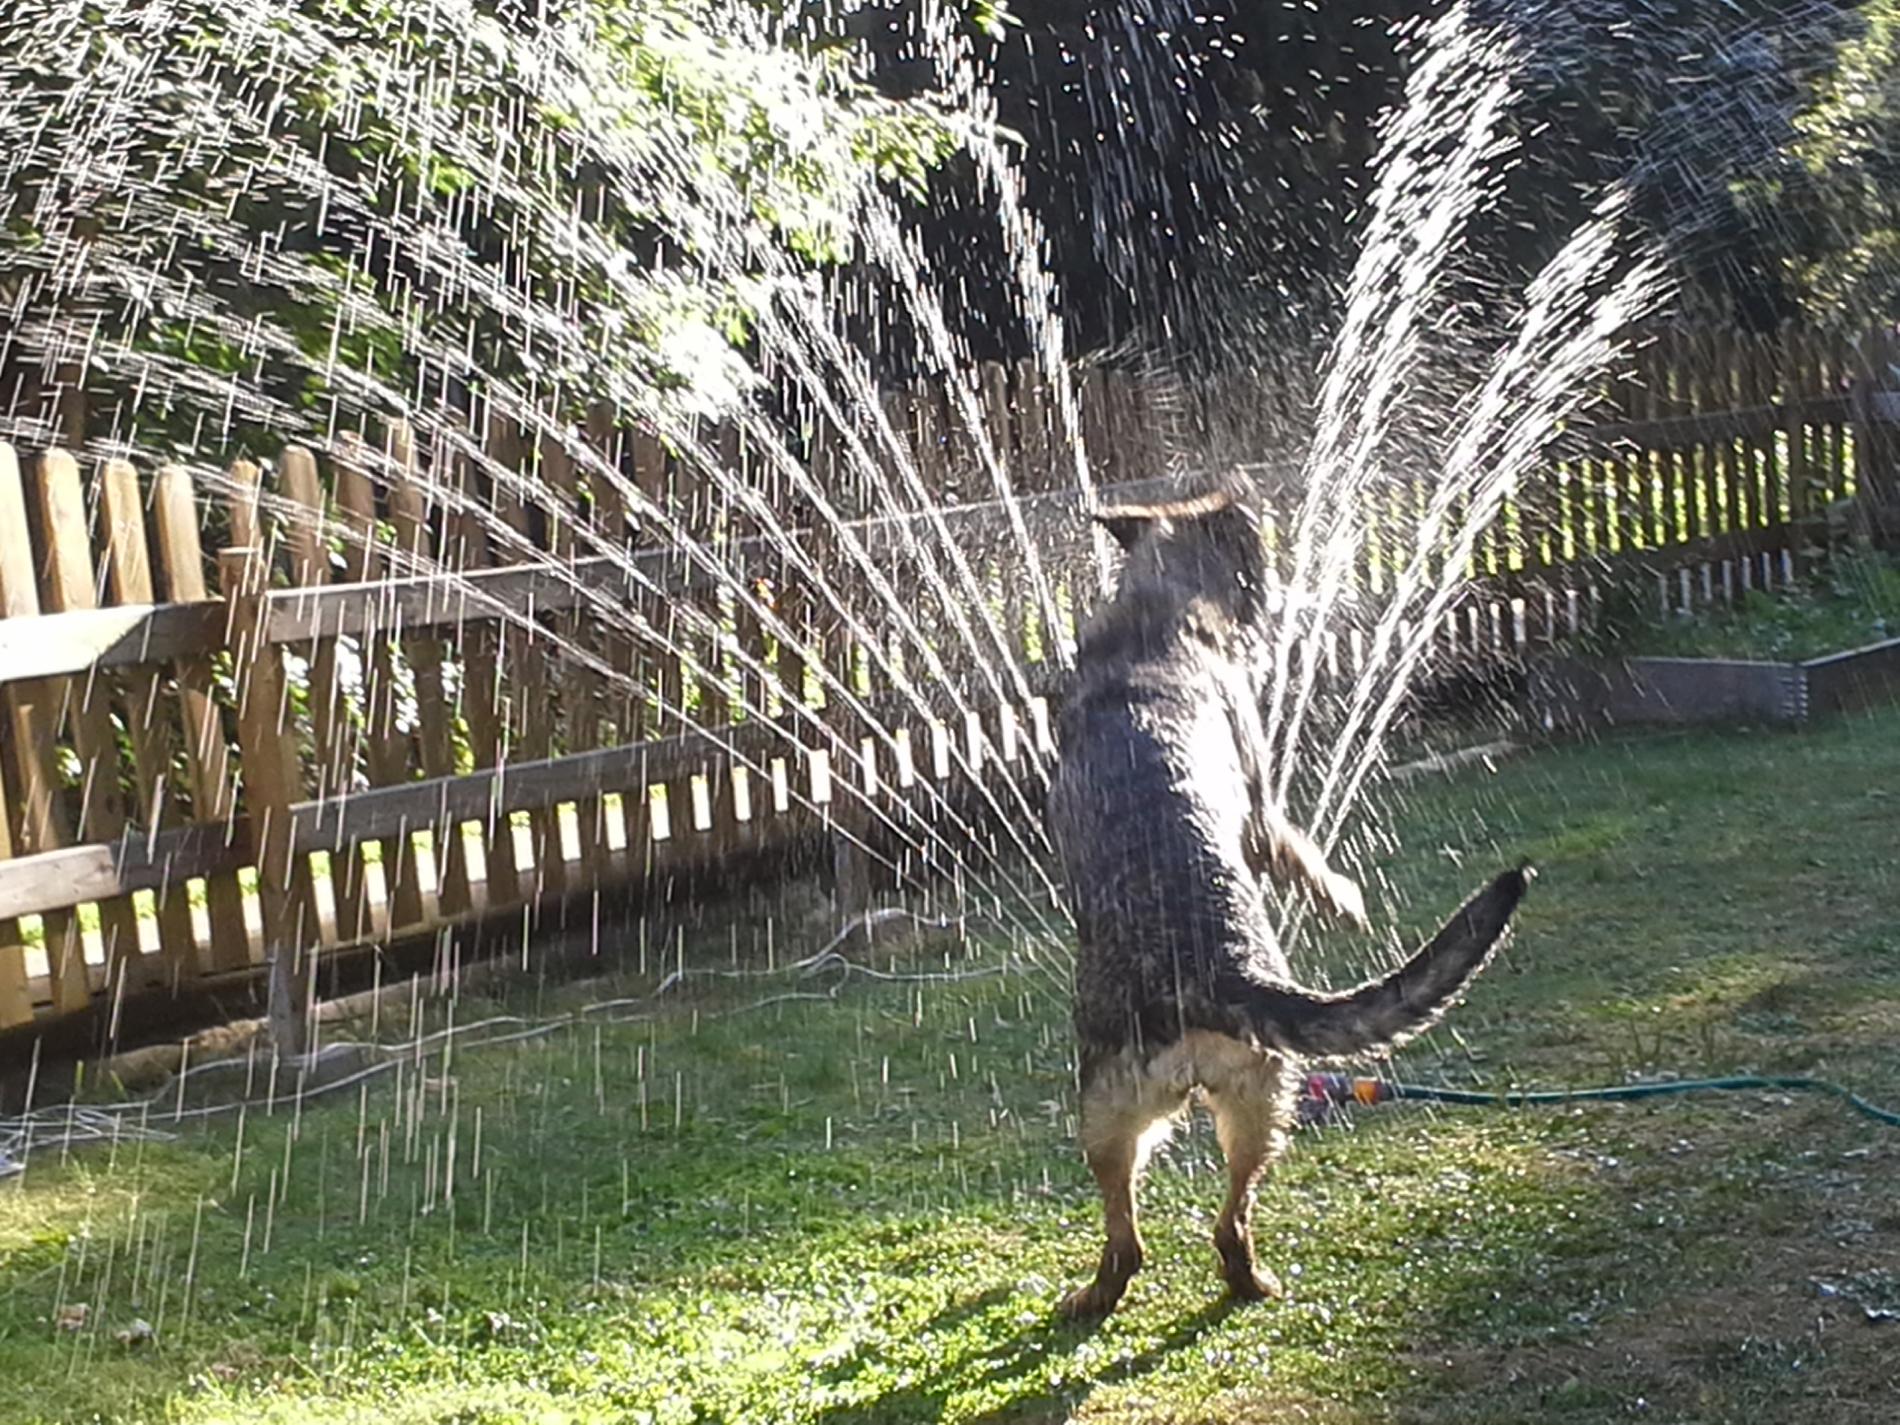 Shäfern Aika älskar sommaren och vattenspridaren.